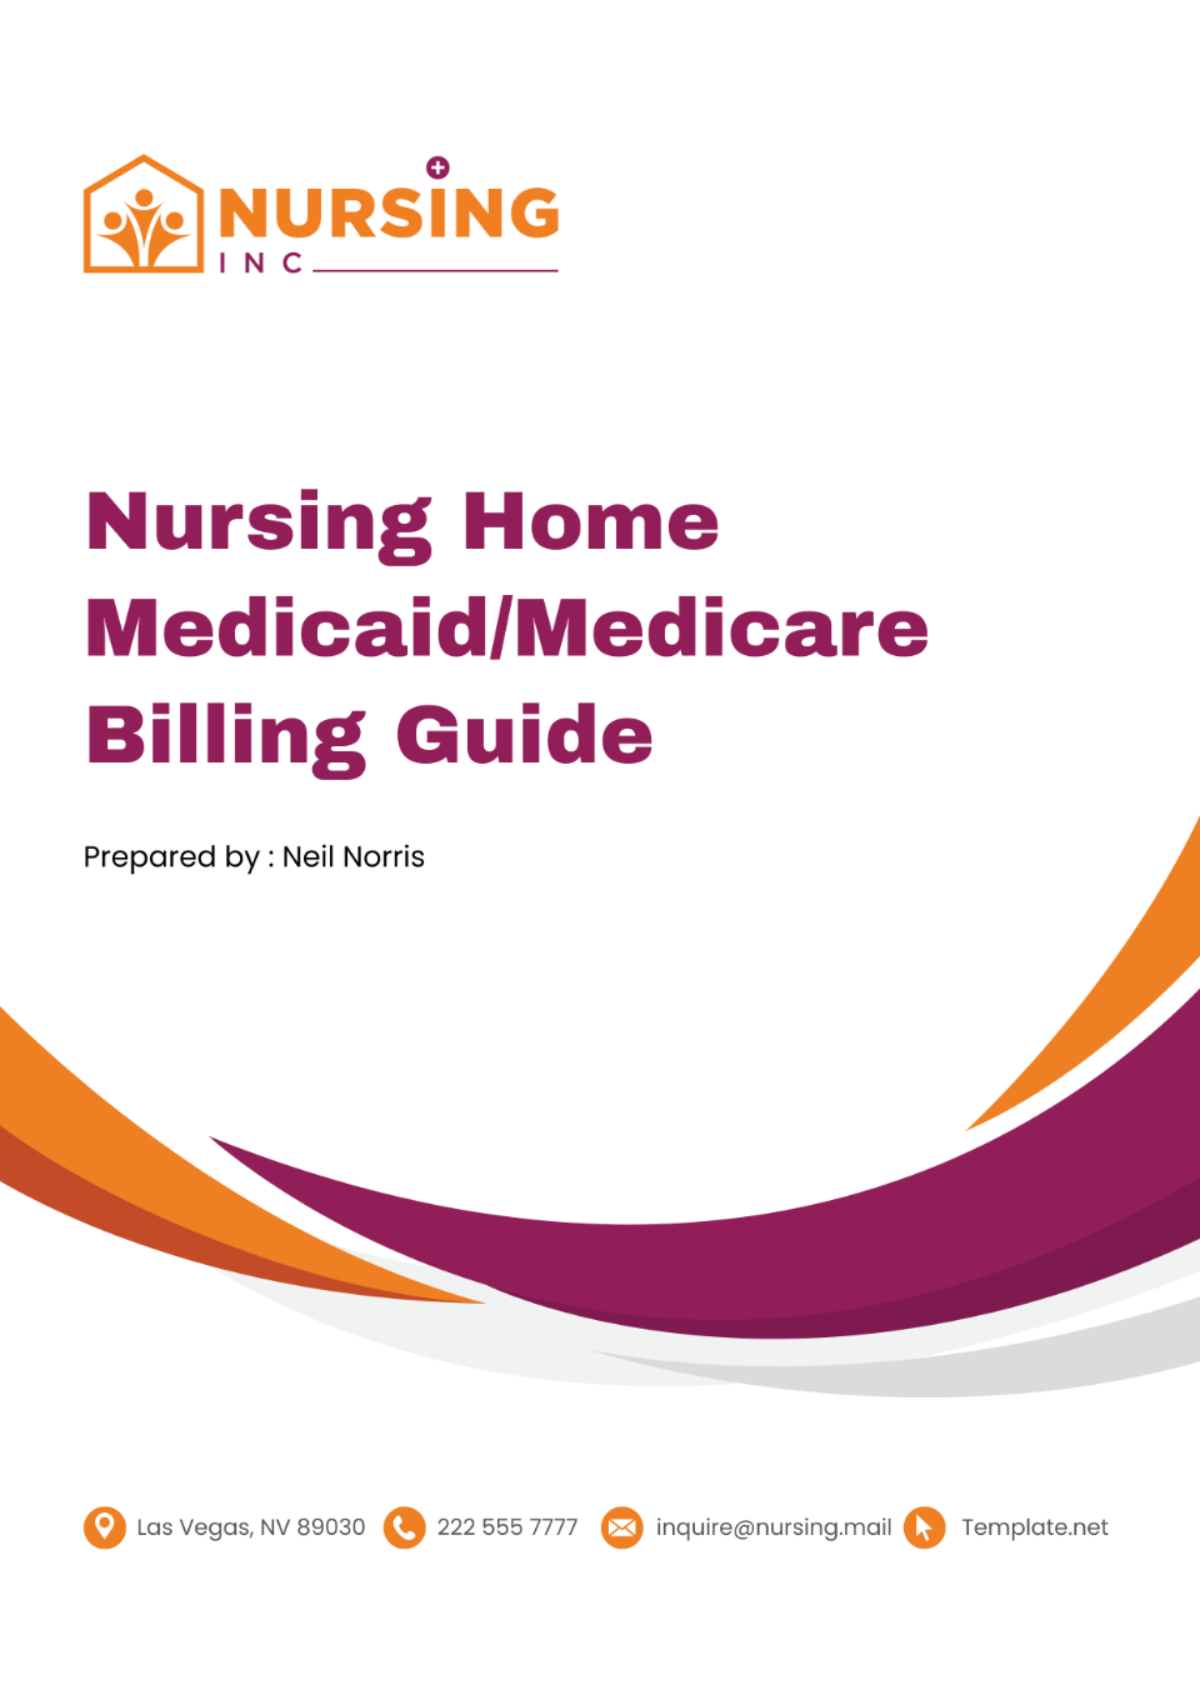 Nursing Home Medicaid/Medicare Billing Guide Template